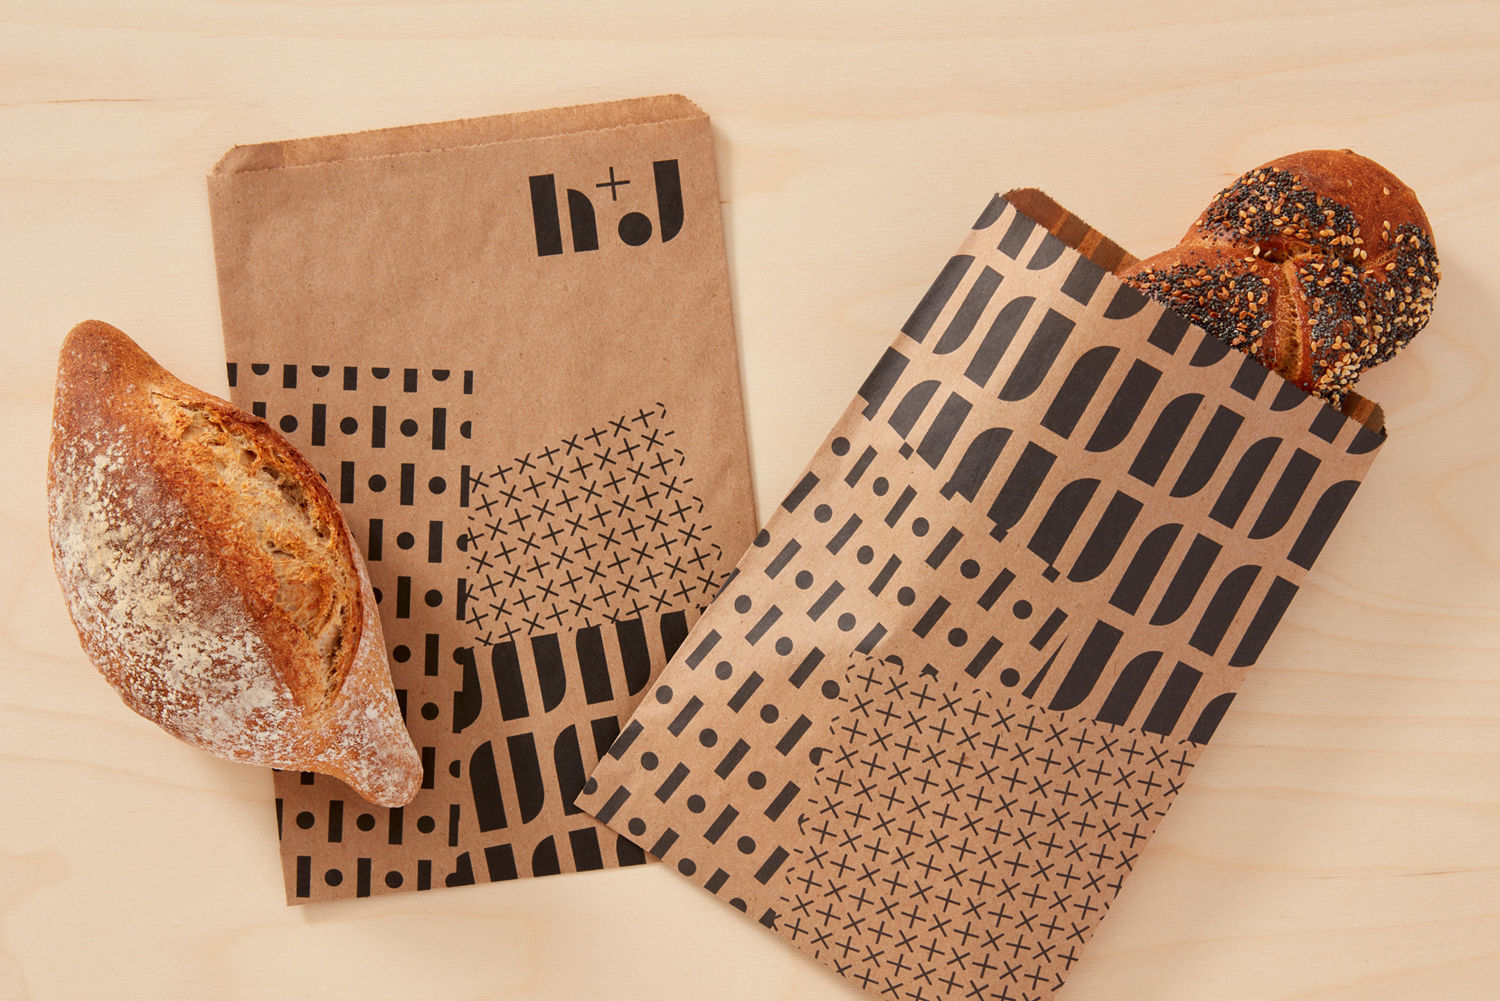 餐饮品牌策划包装设计vi设计西安四喜品牌包装设计